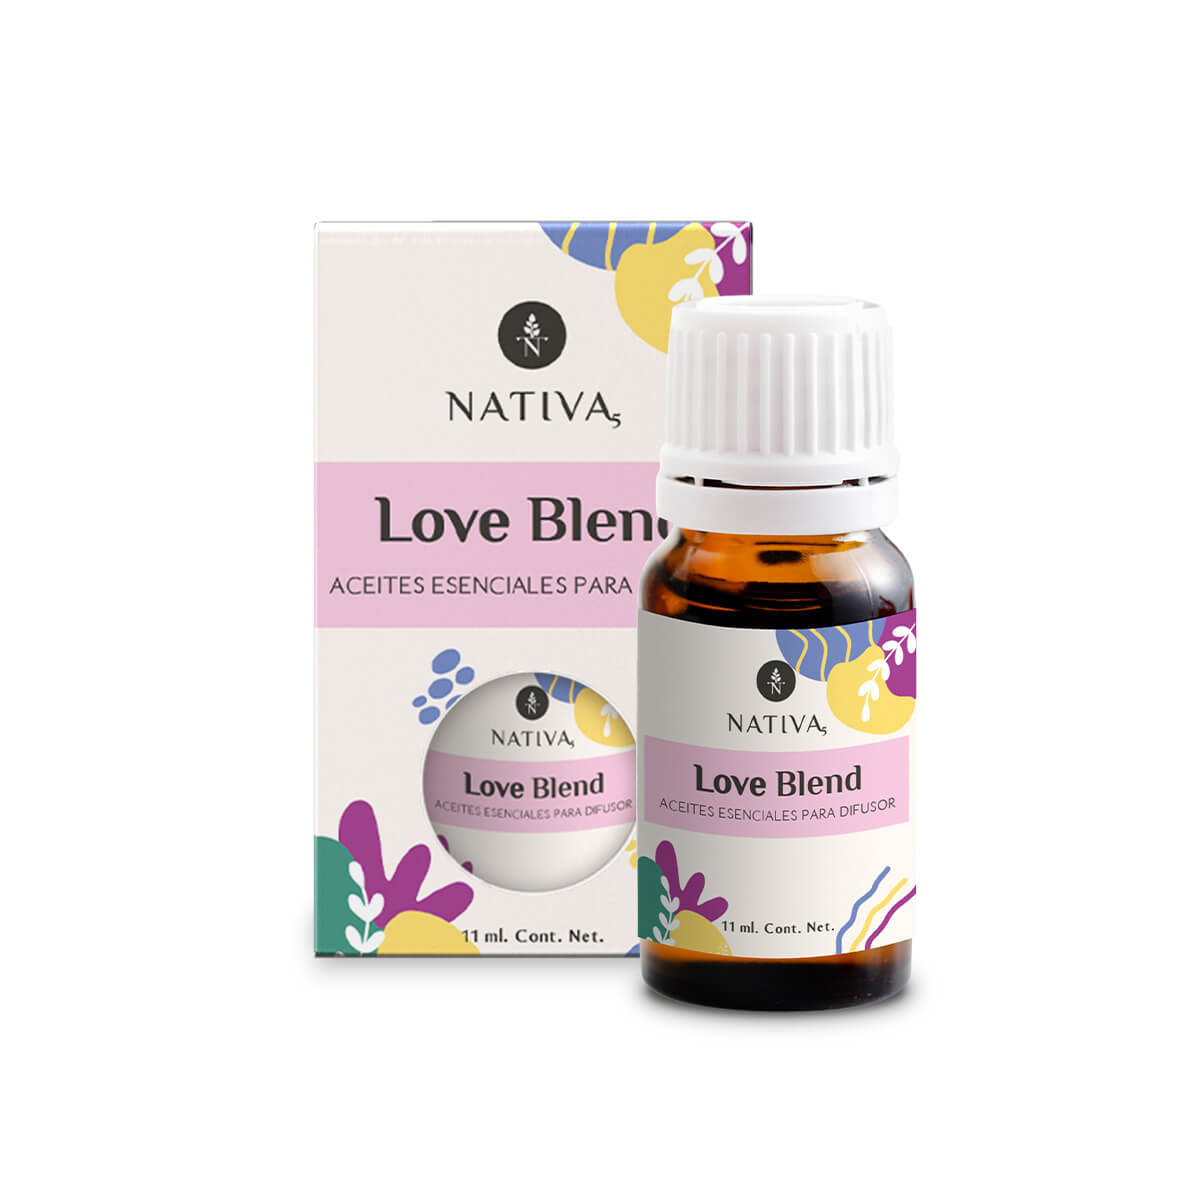 Love Blend - Difusor 11 ml. Nativa5